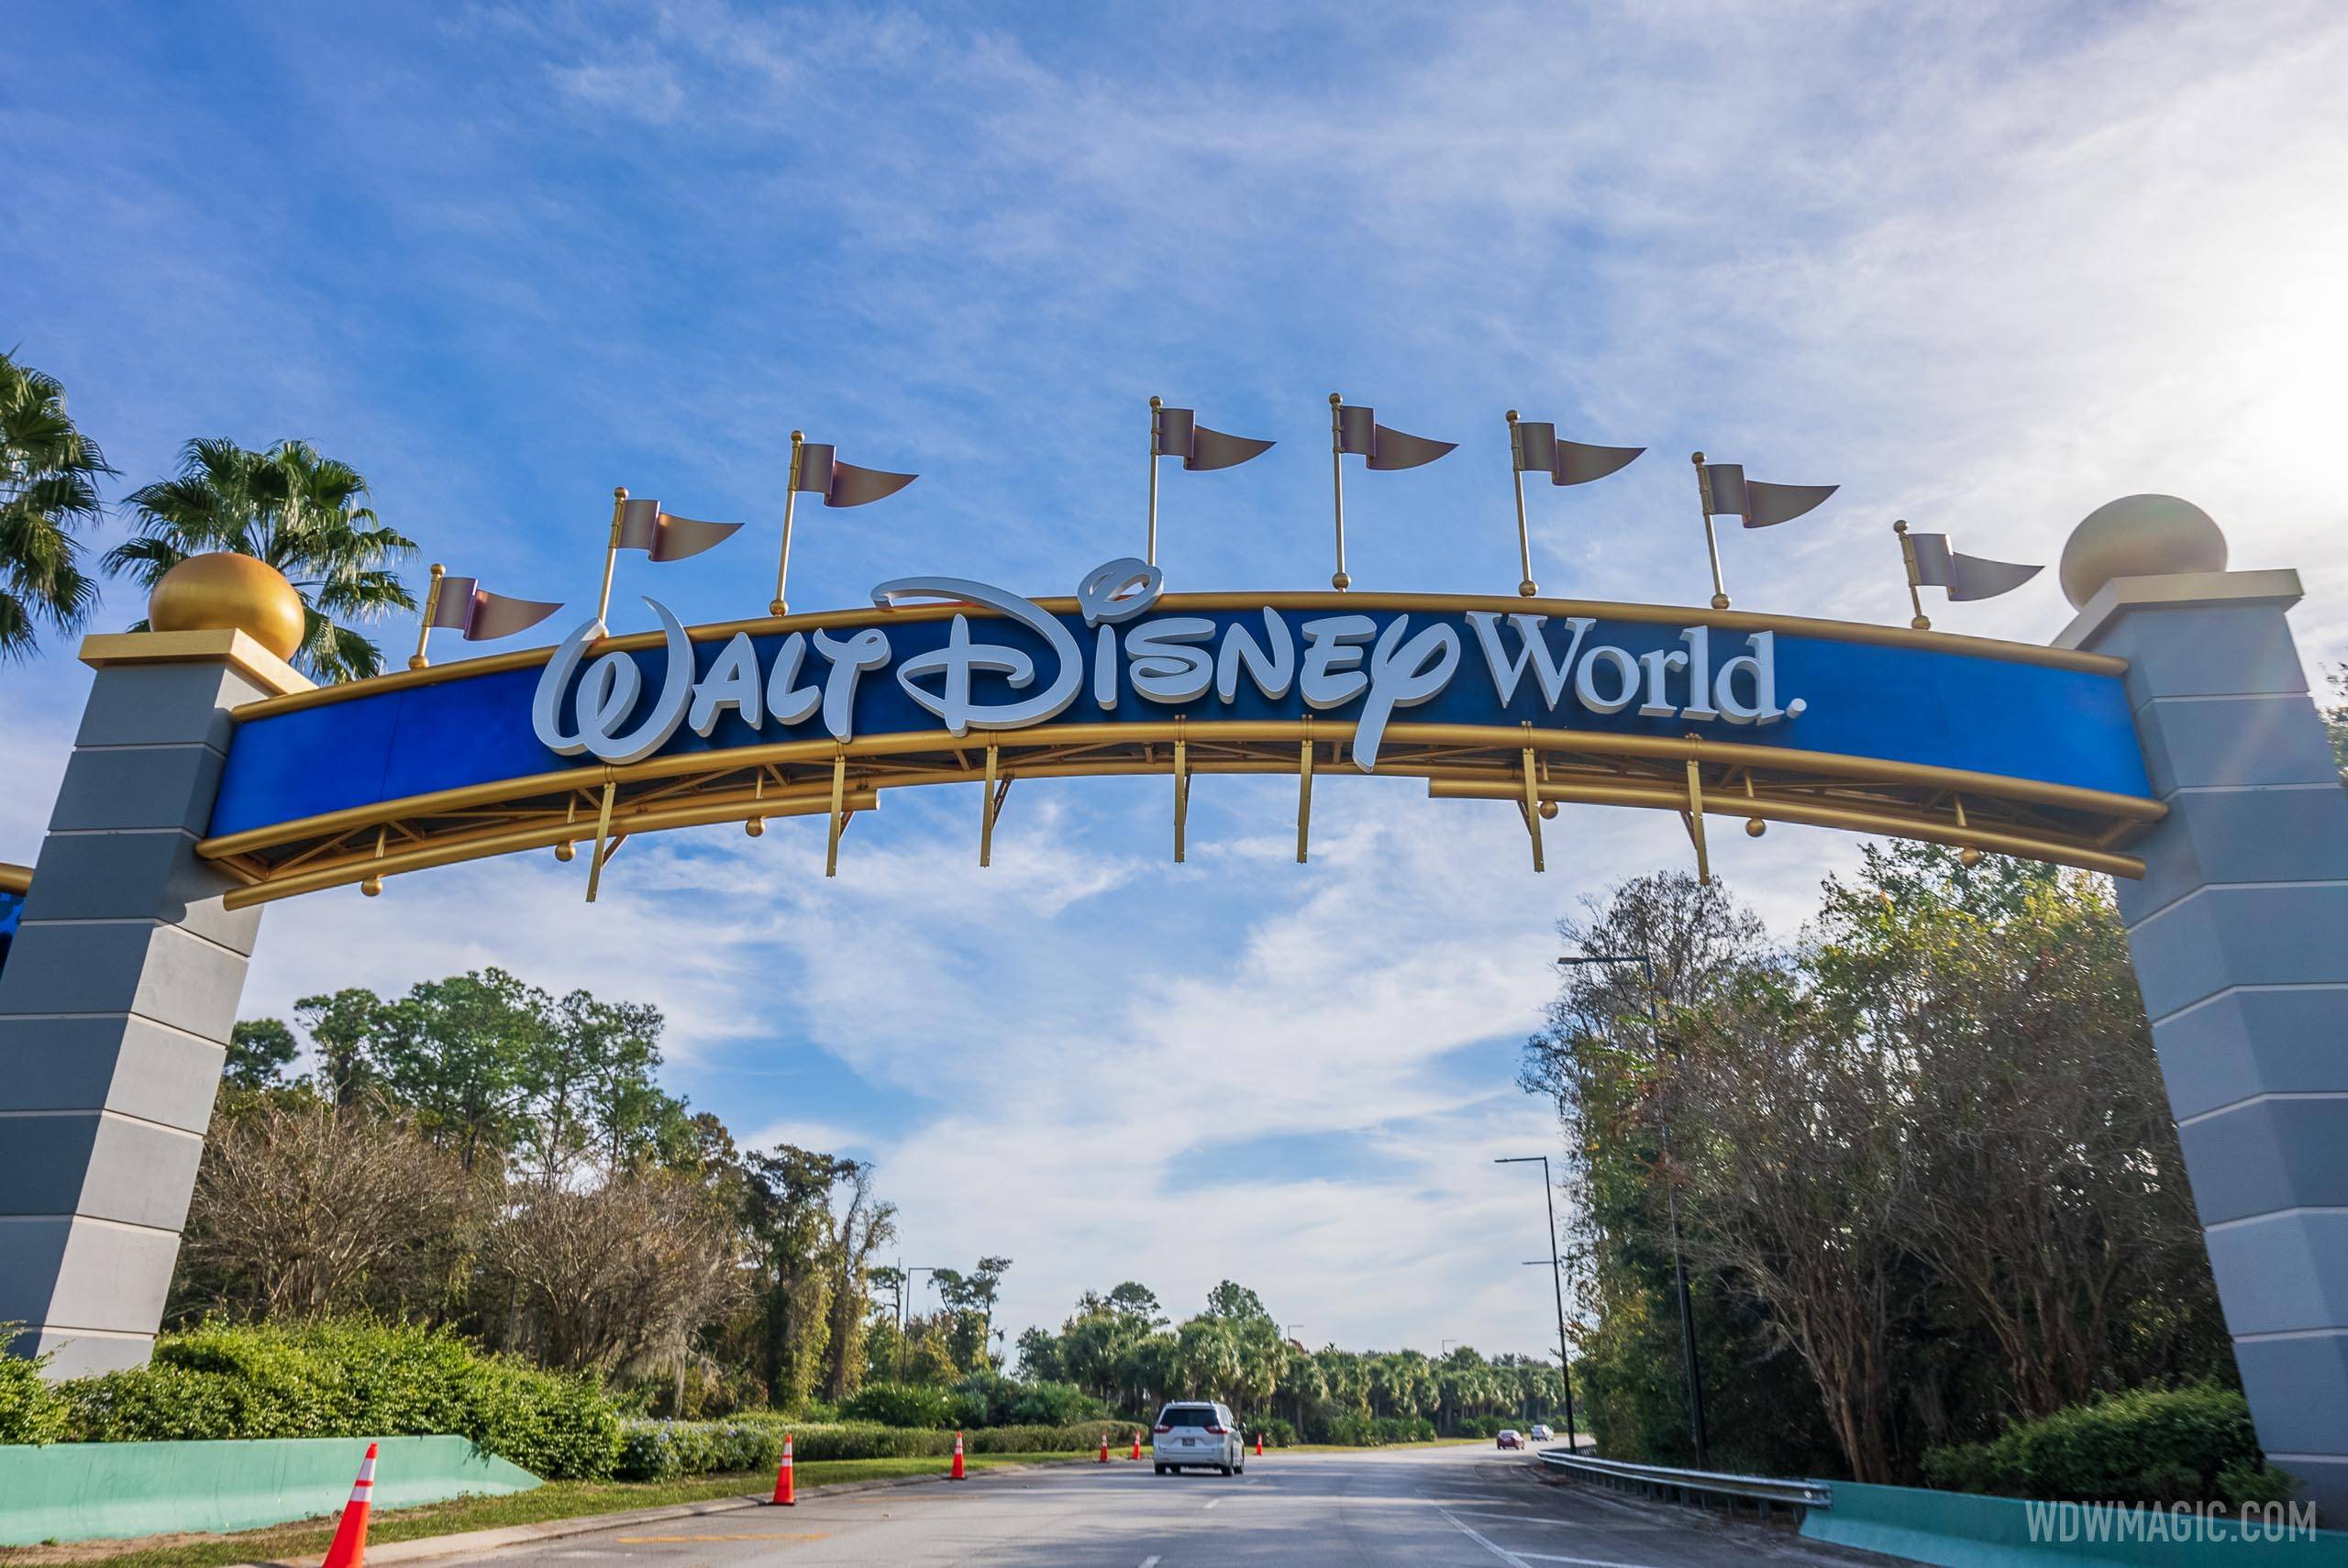 The updated Walt Disney World gateway design